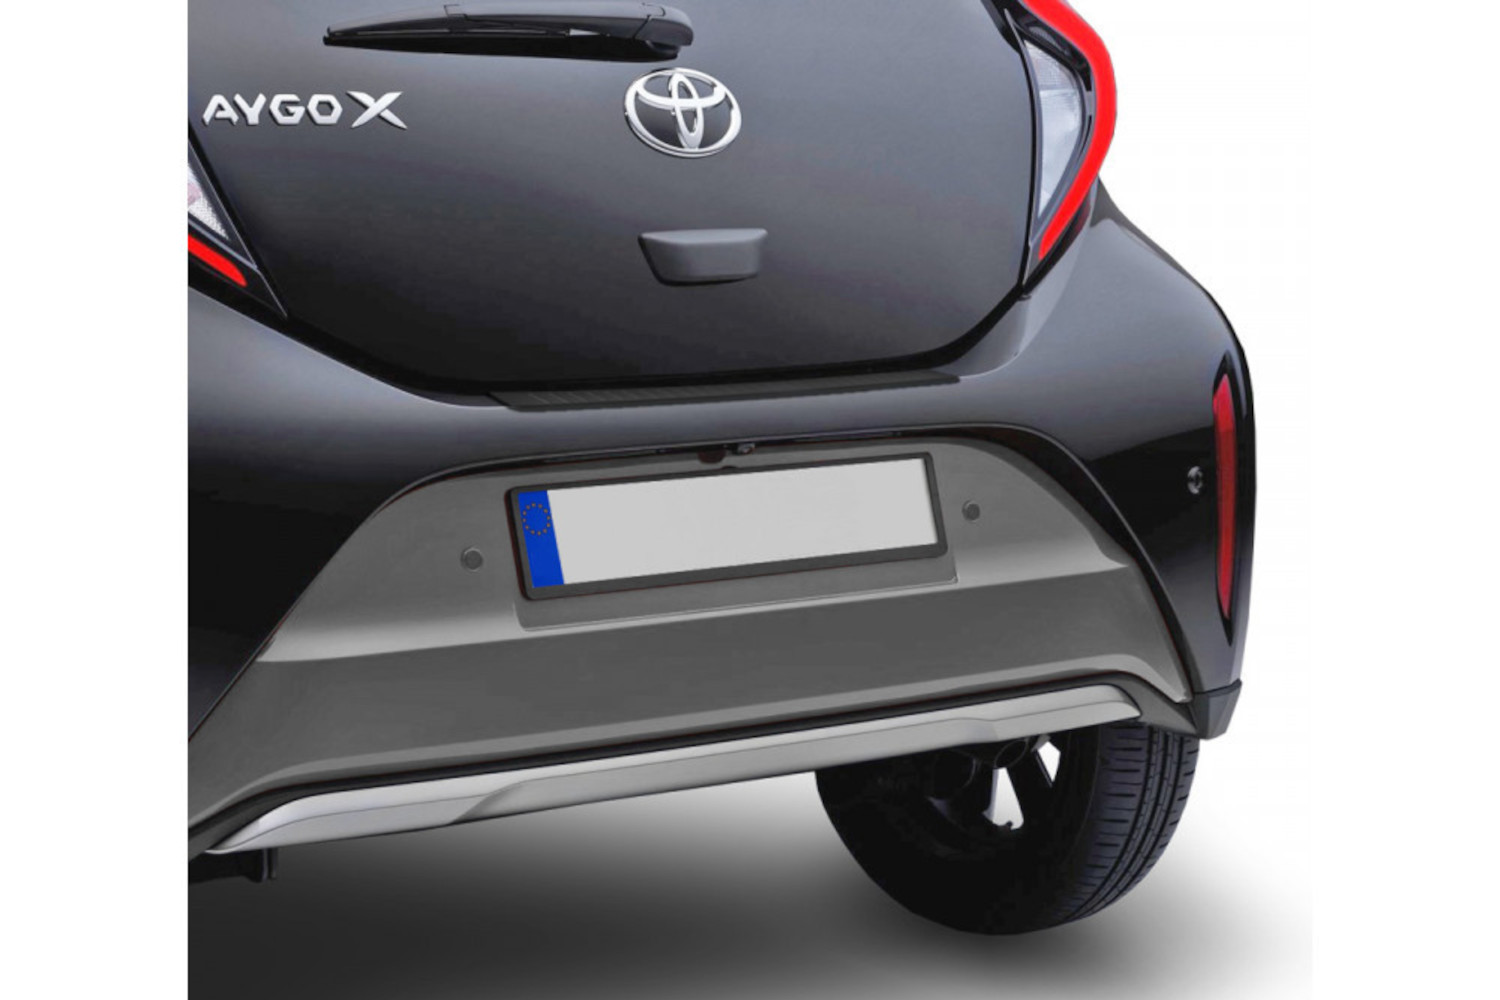 Zubehör für Toyota aygo günstig bestellen